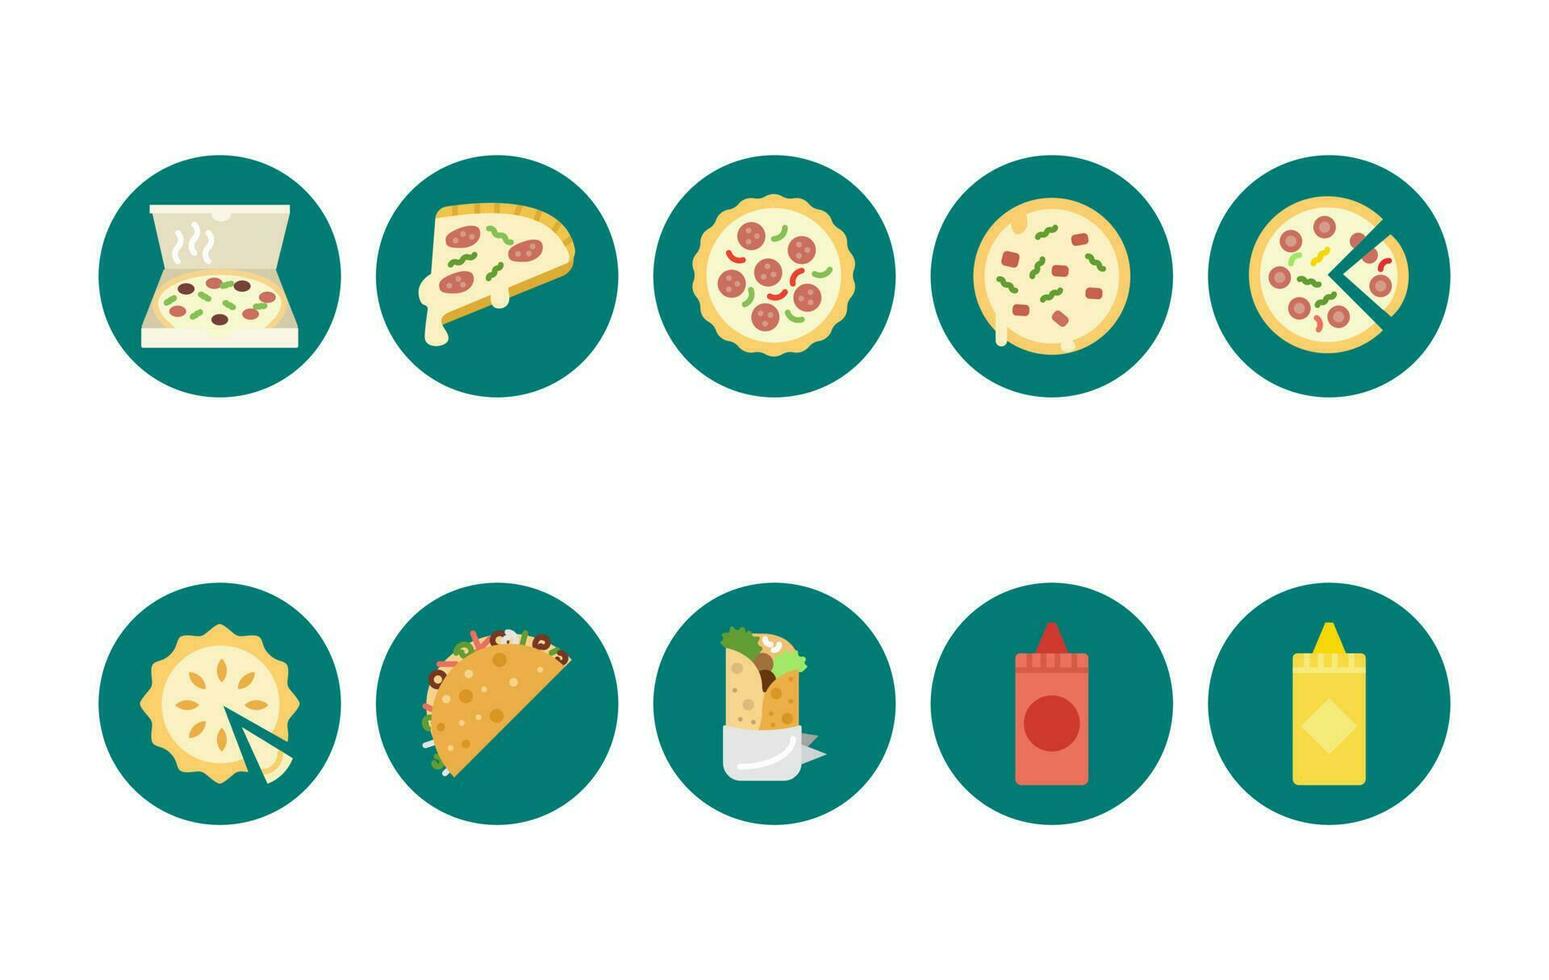 Pizza plano iconos, Pizza pasteles iconos, salsa de tomate y mostaza iconos, vector eps archivo